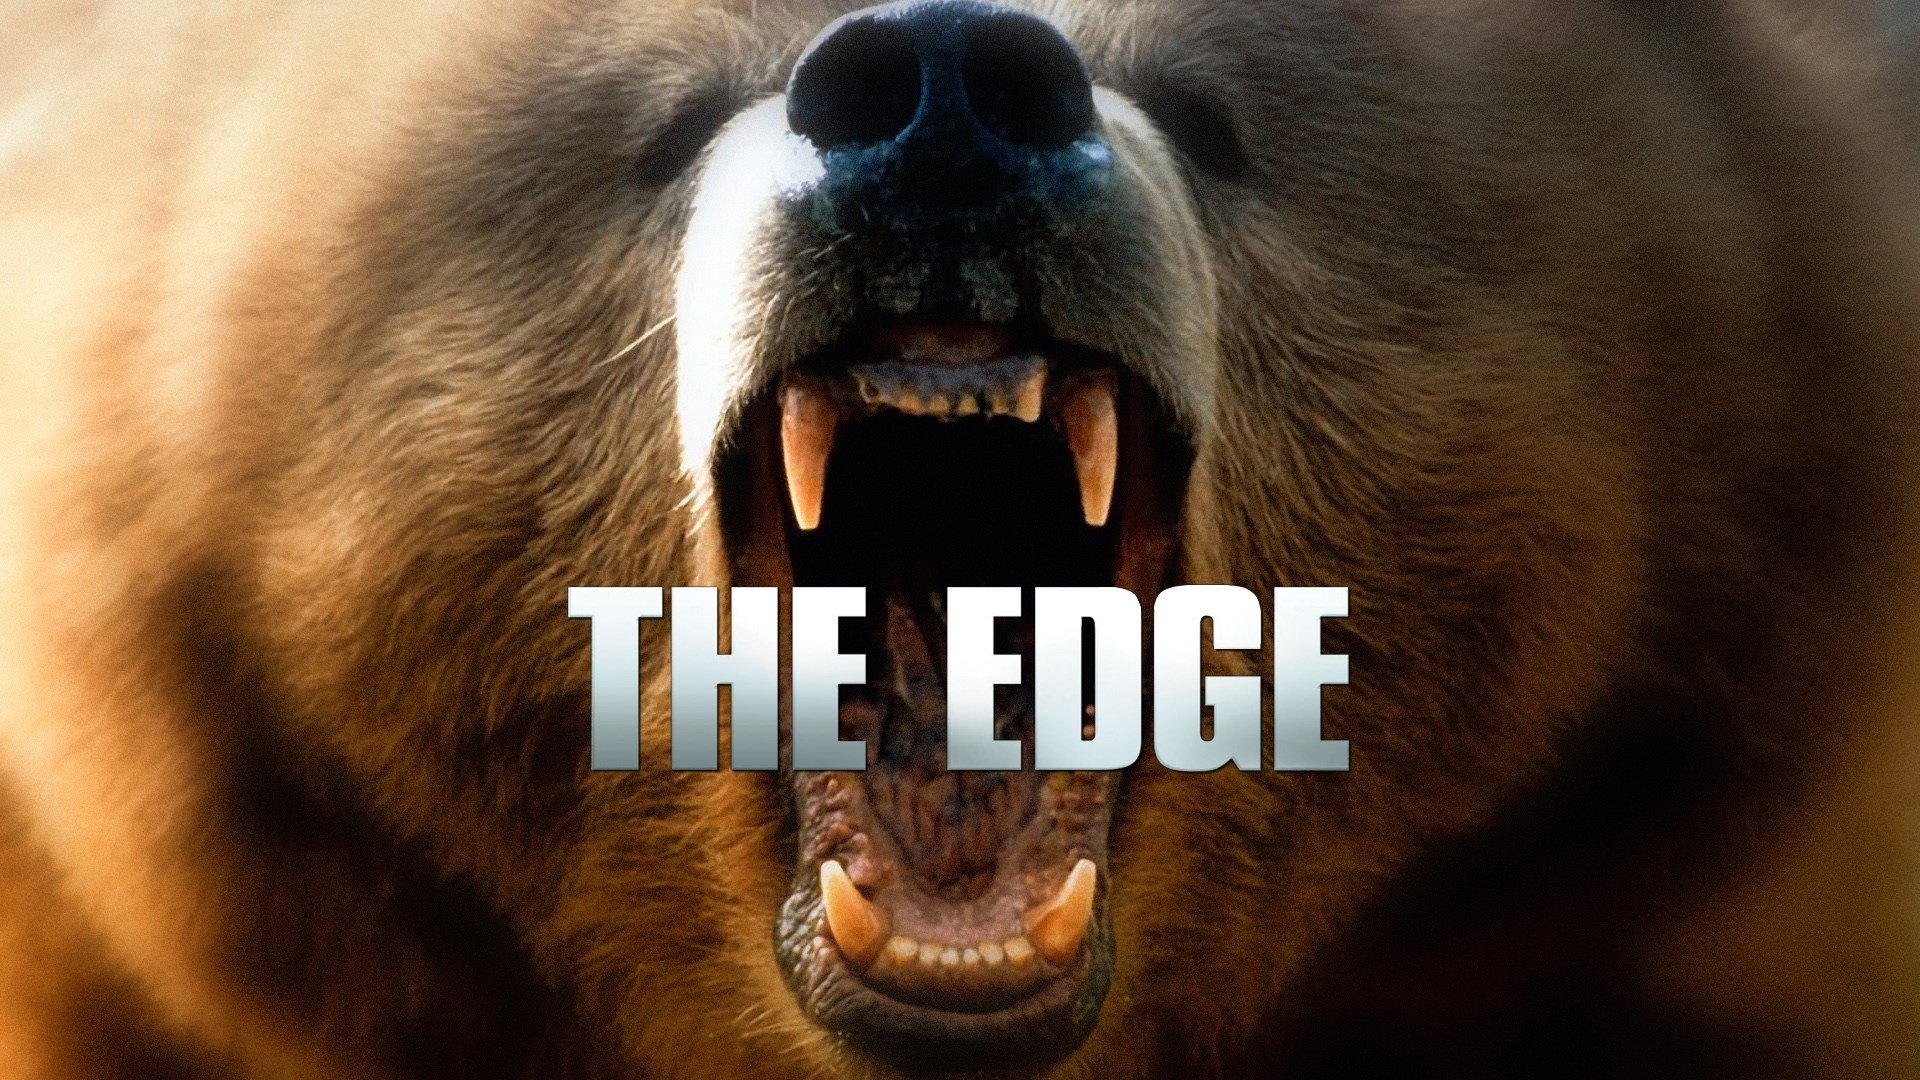 The Edge film, Full movie free, Action thriller, Online streaming, 1920x1080 Full HD Desktop